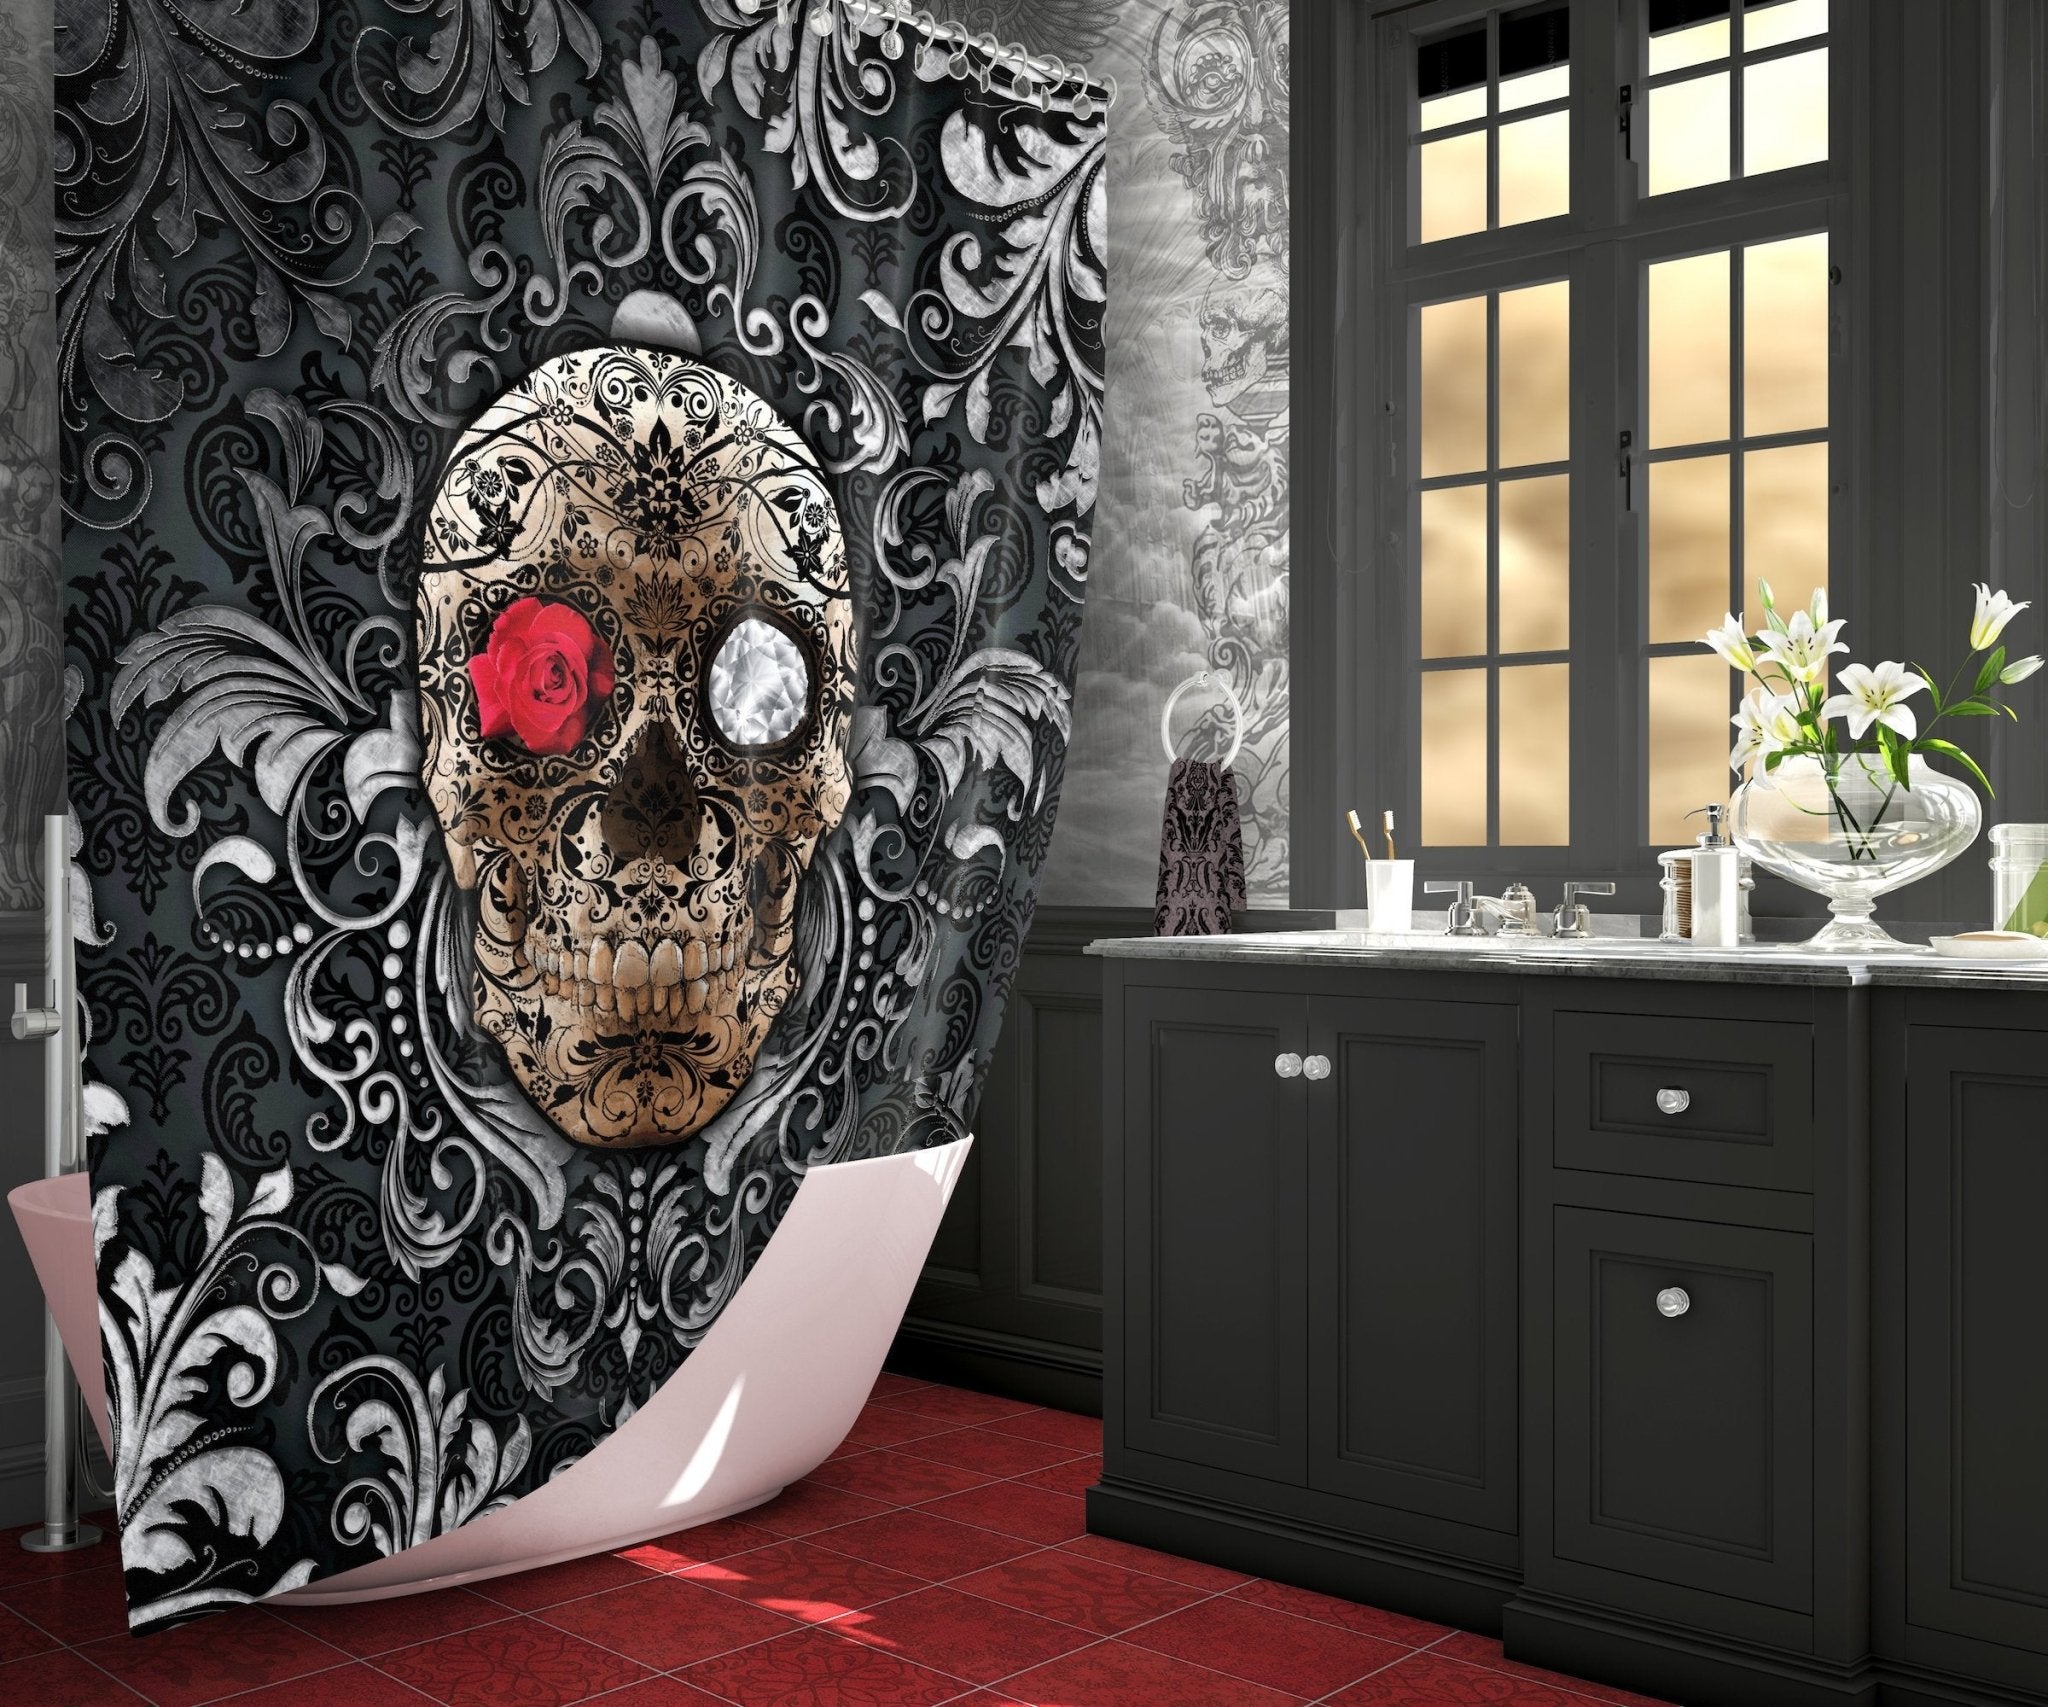 Sugar Skull Shower Curtain, Gothic Bathroom Decor, Macabre Art - Mexican, Dia de los Muertos, Day of the Dead - Abysm Internal